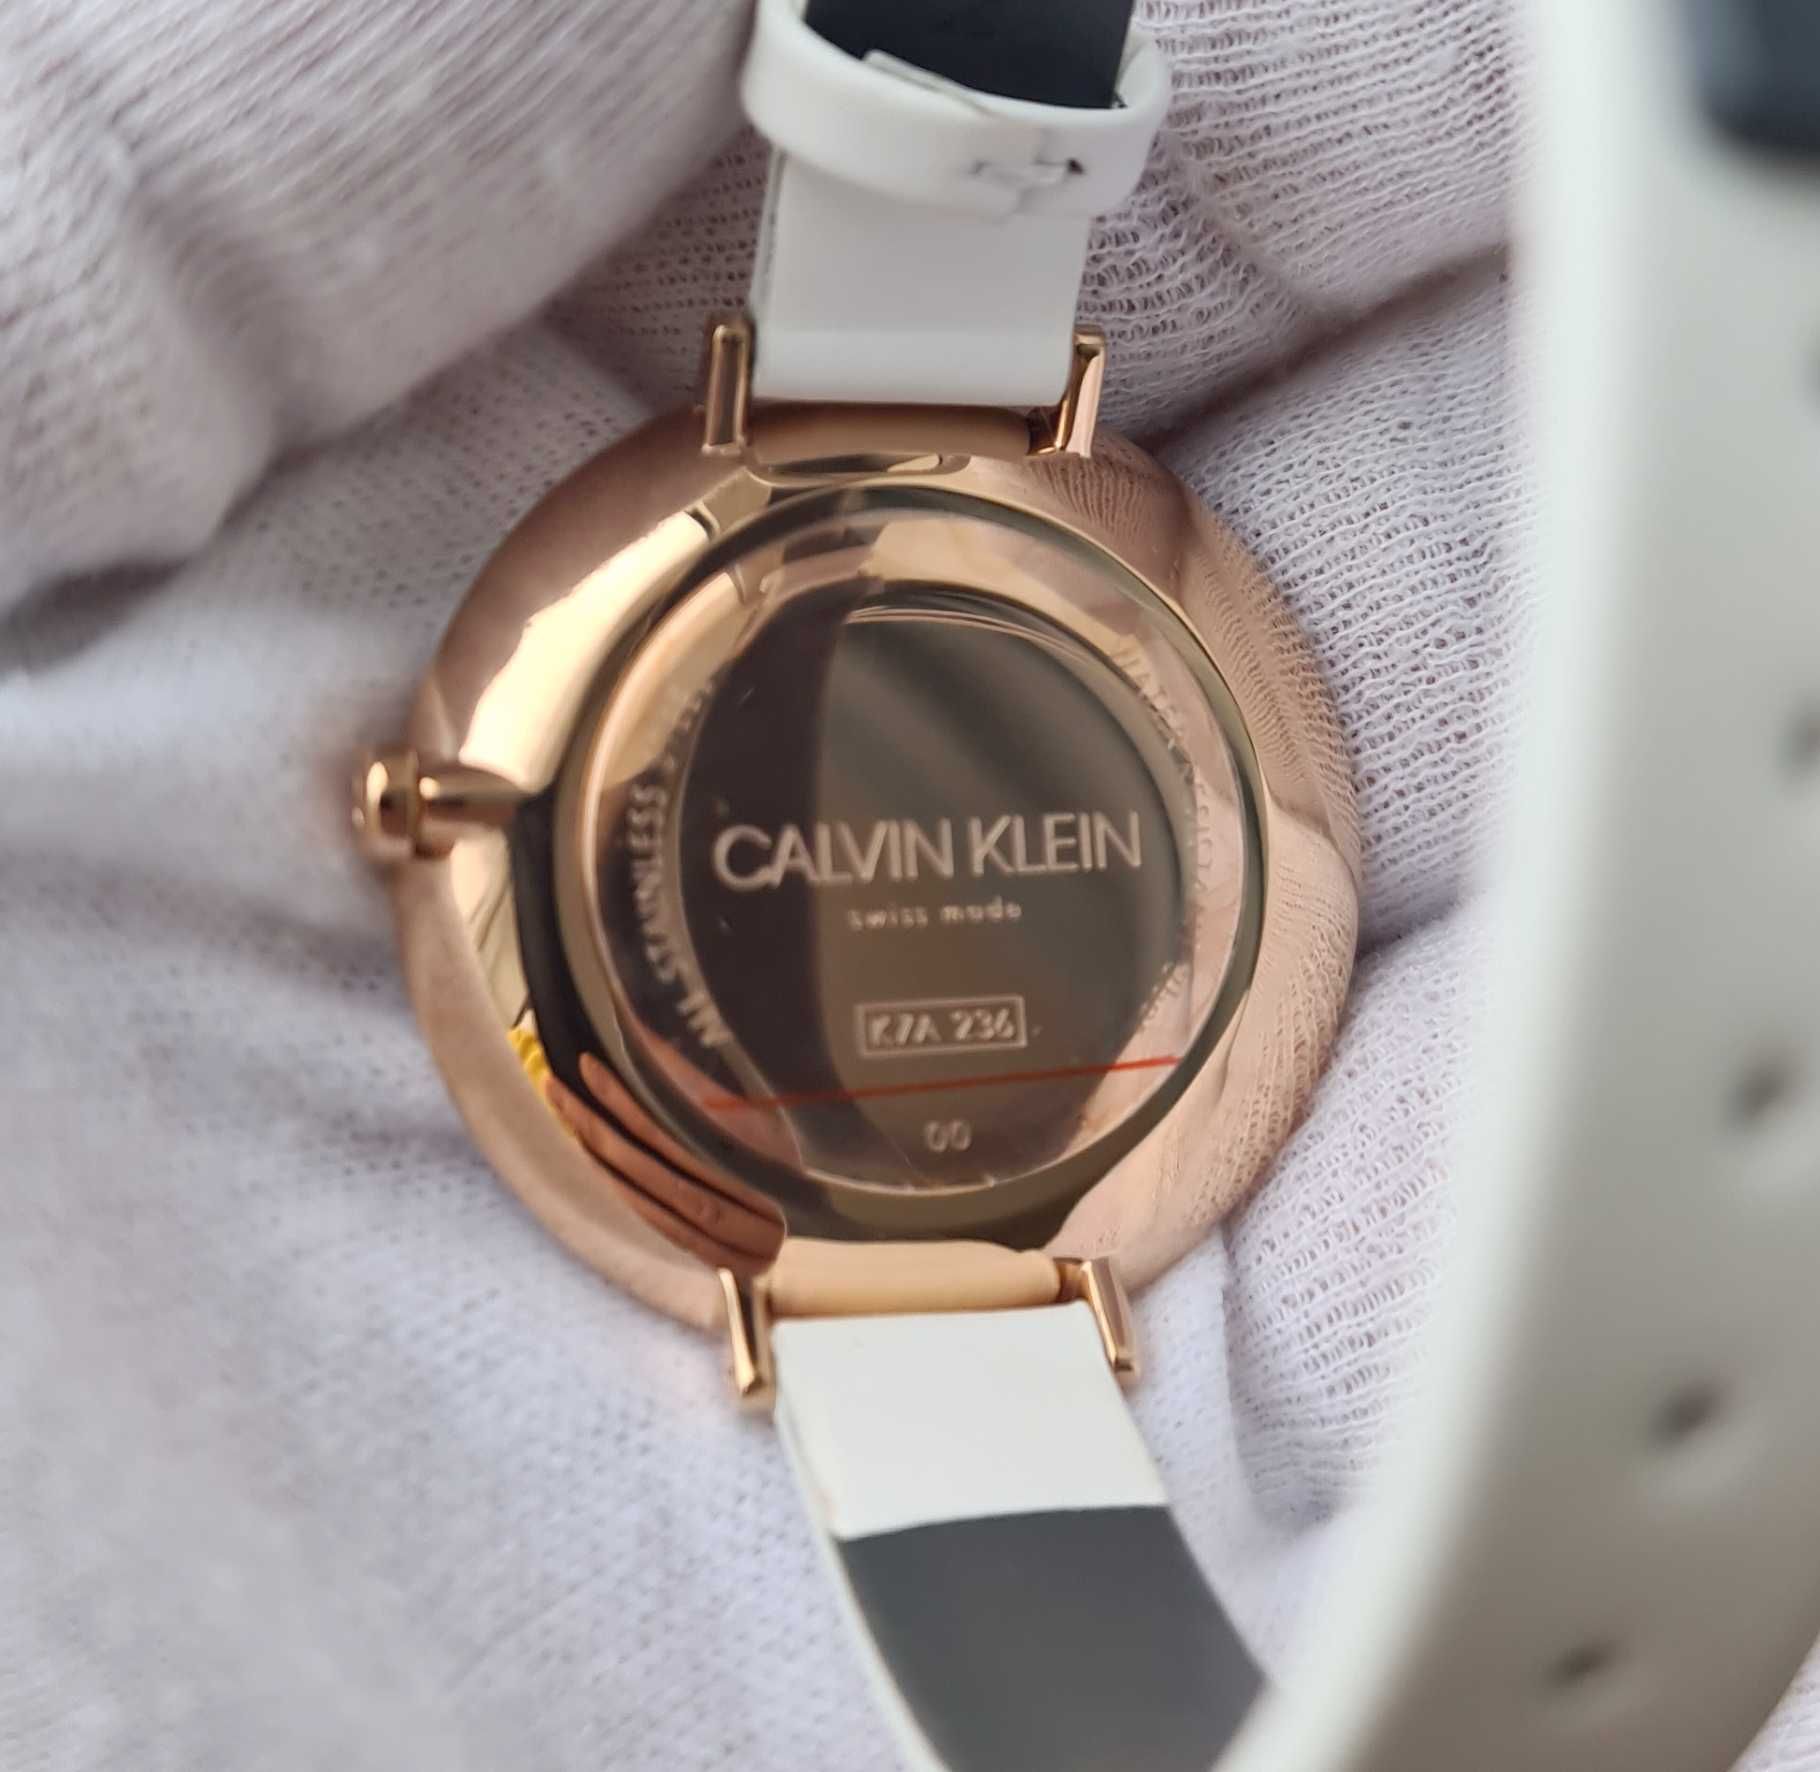 Жіночий годинник Calvin Klein K7A236LH Swiss новий